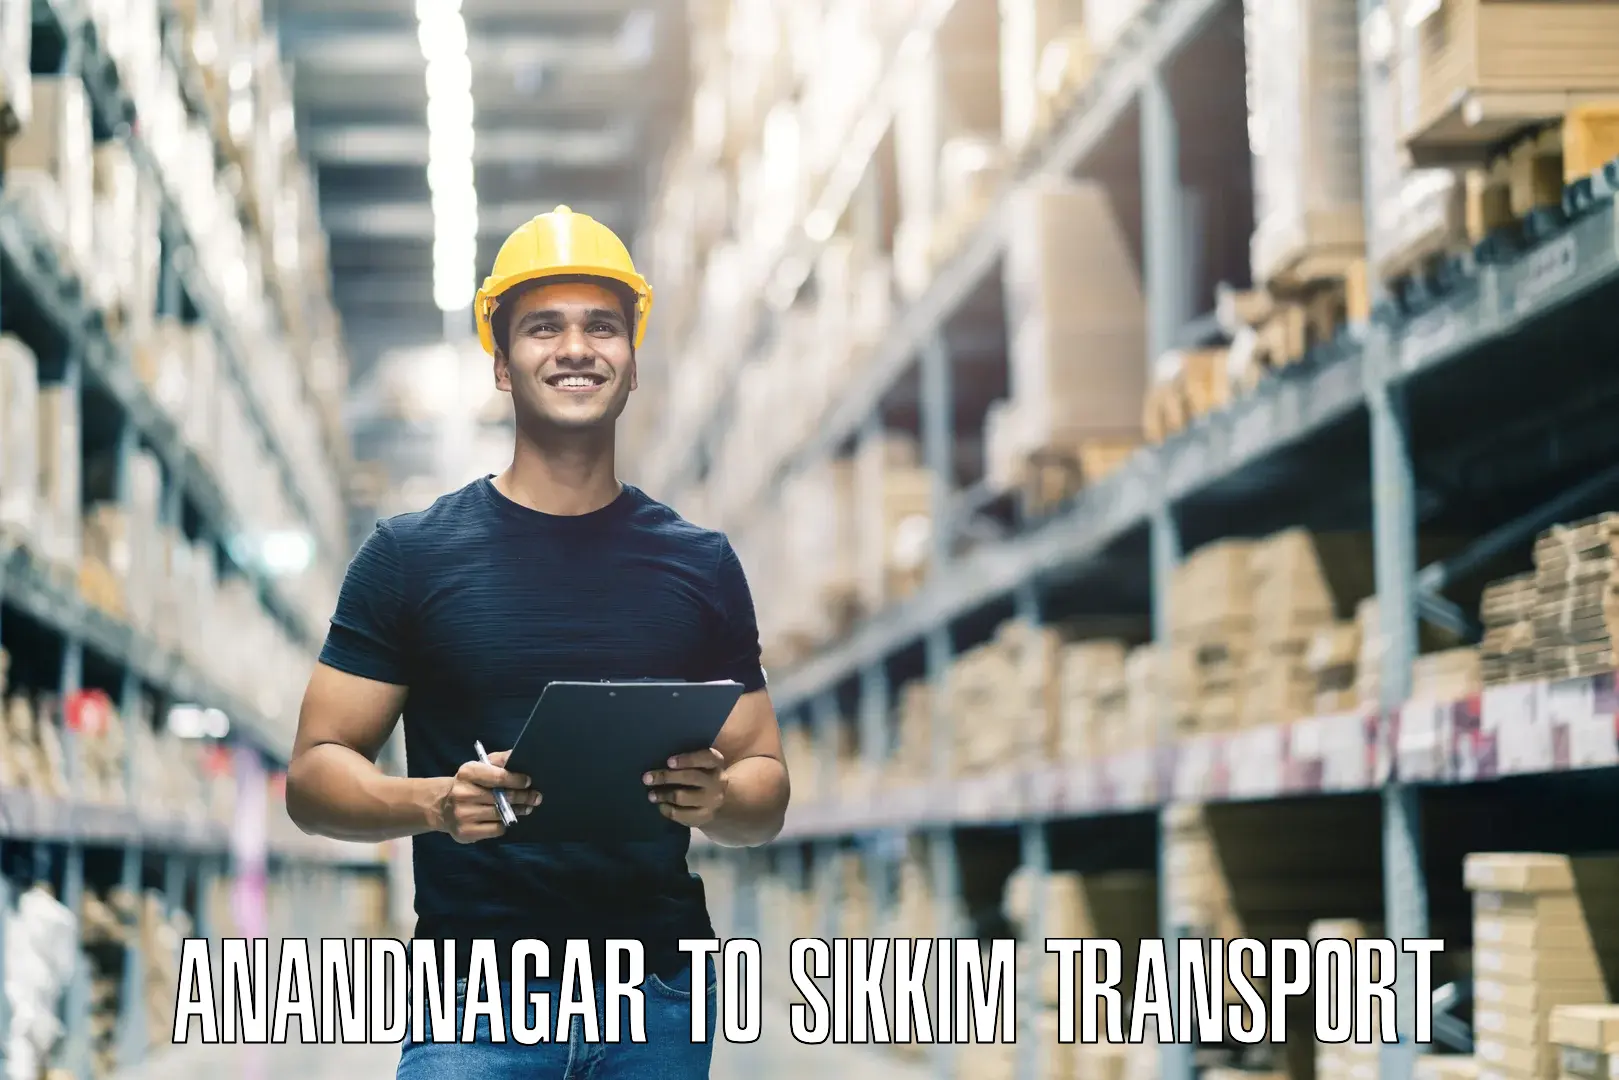 International cargo transportation services Anandnagar to Ranipool